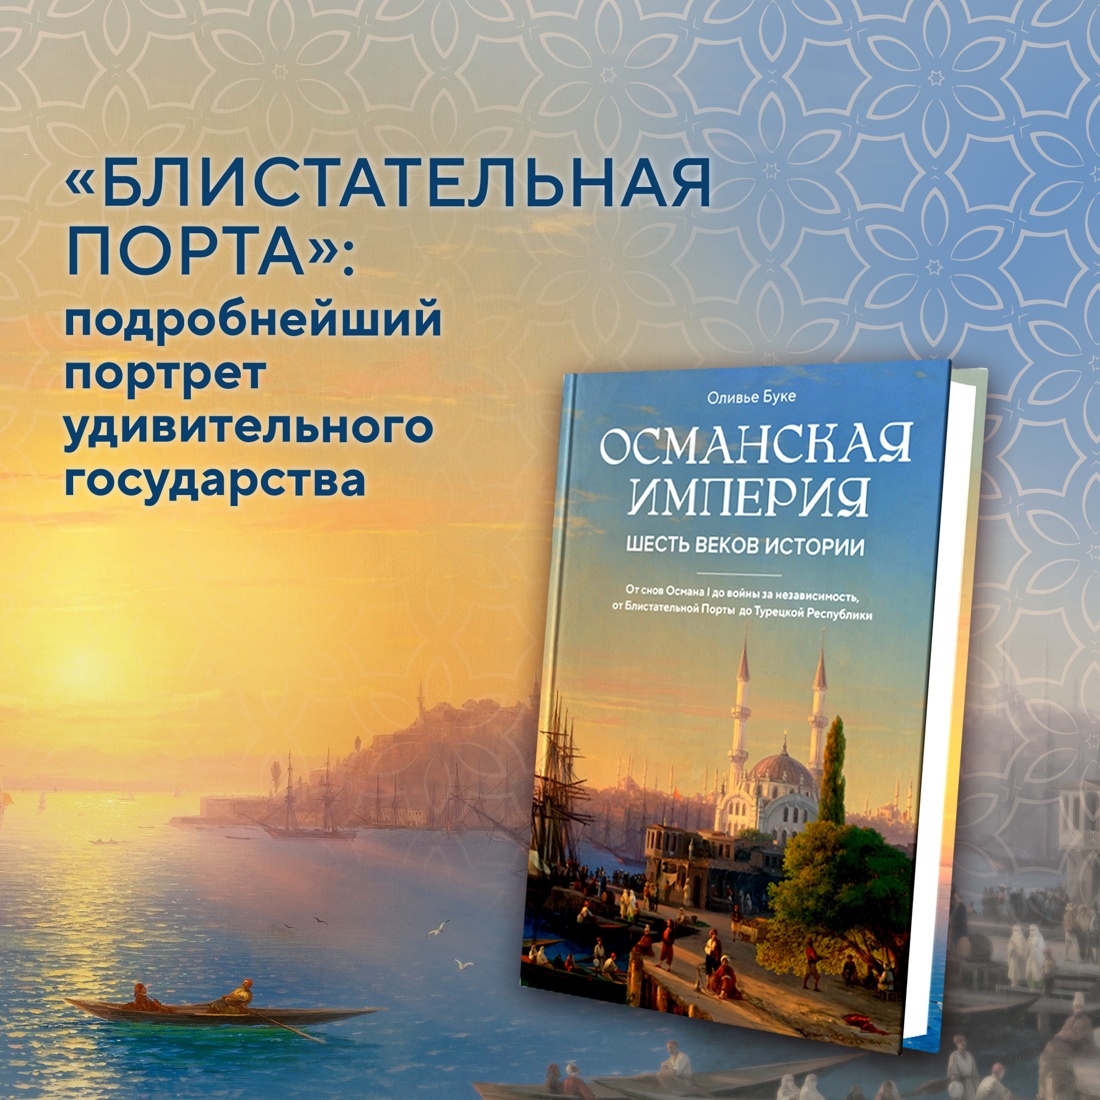 Промо материал к книге "Османская империя. Шесть веков истории" №0